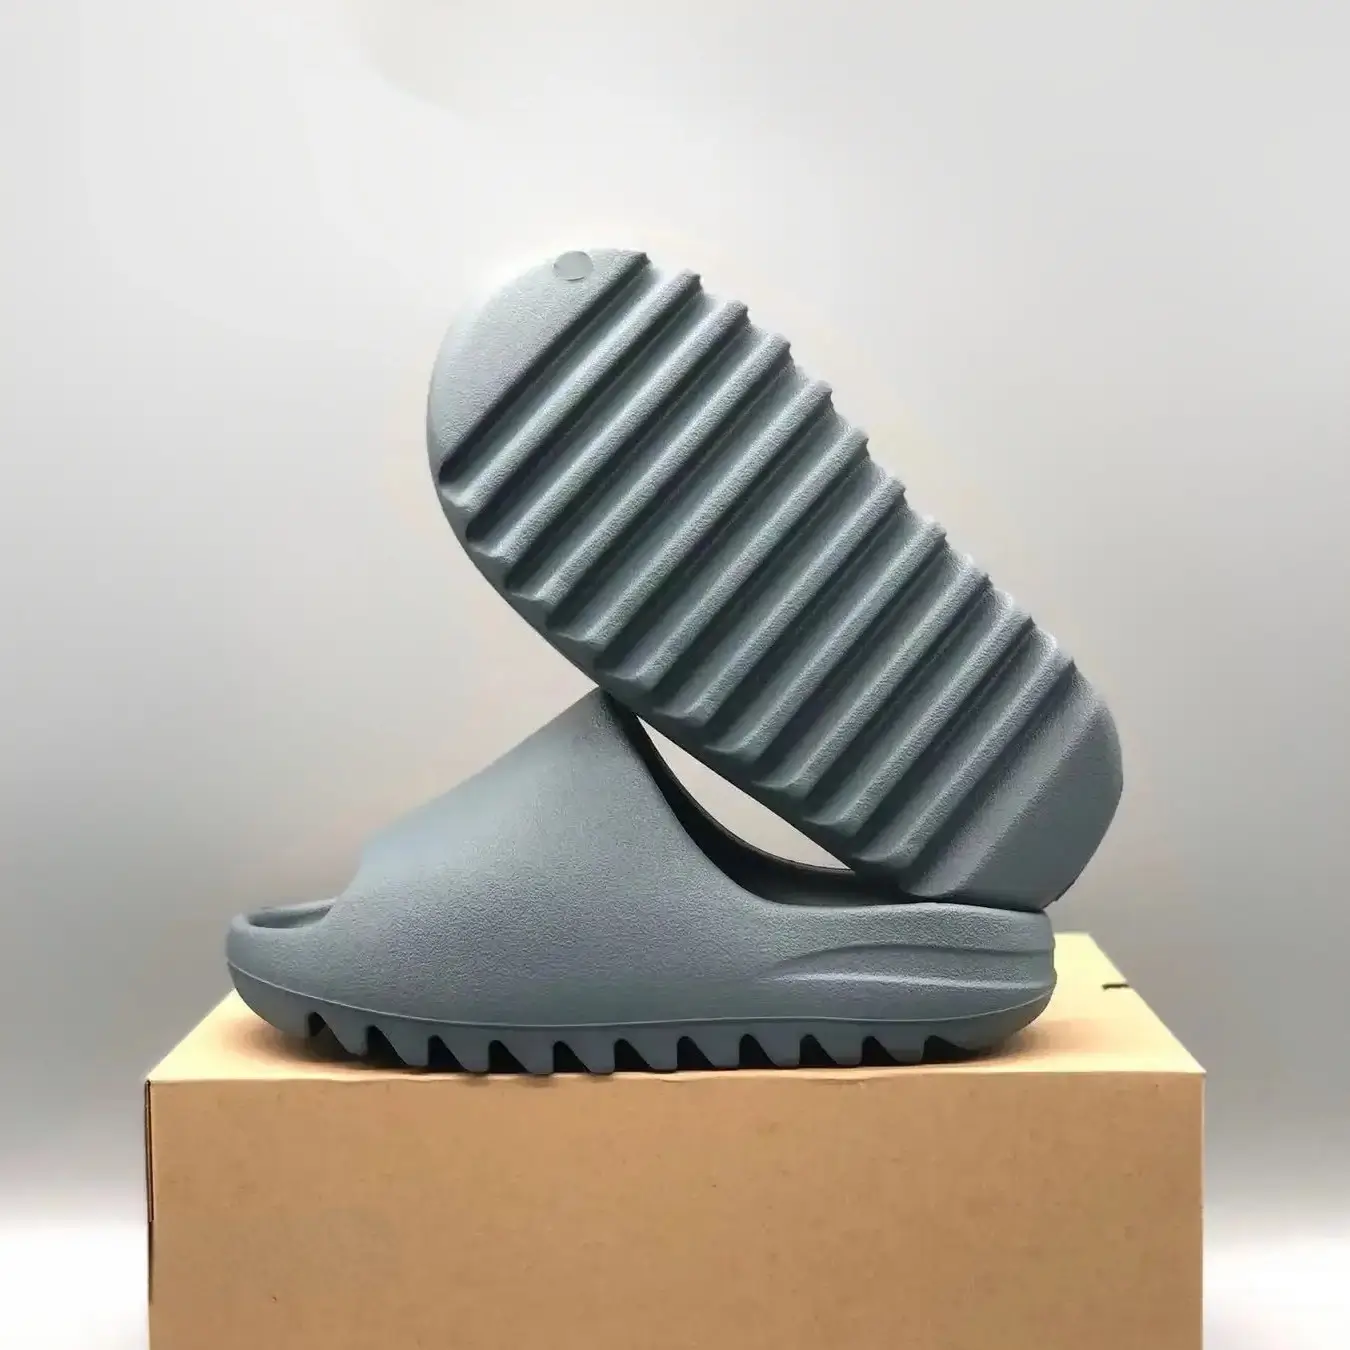 adidas Yeezy Slide ‘Slate Marine’ ID2349 (Grey)